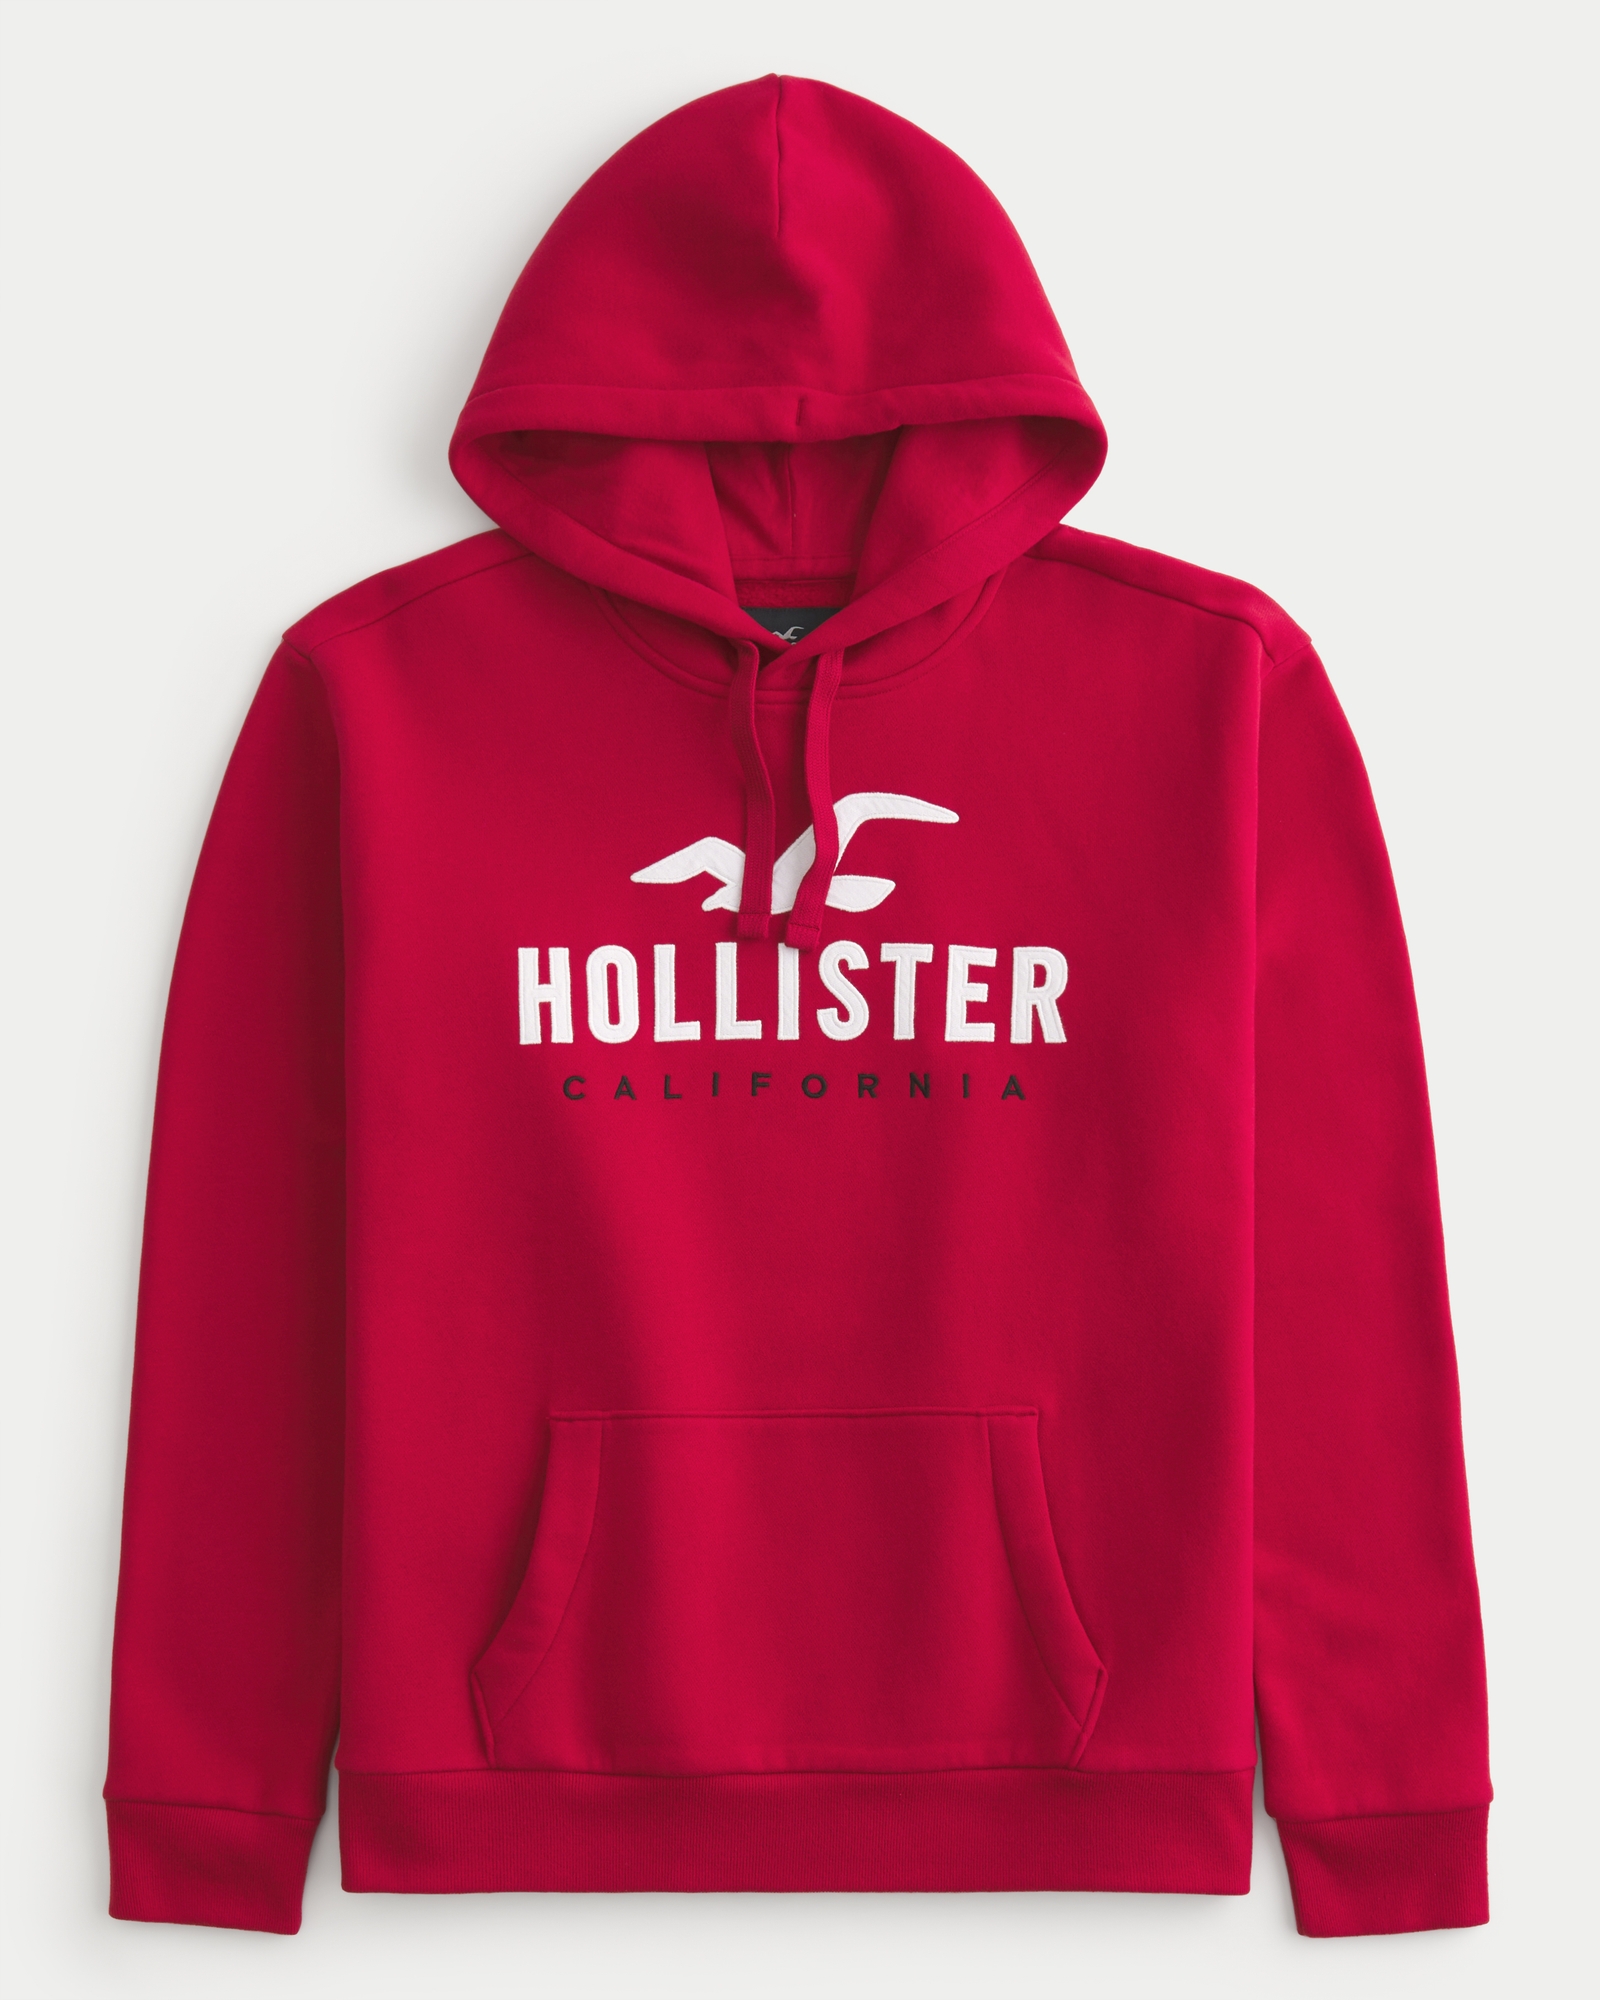 Hollister California Classic Established Premium Cotton Hoodie 